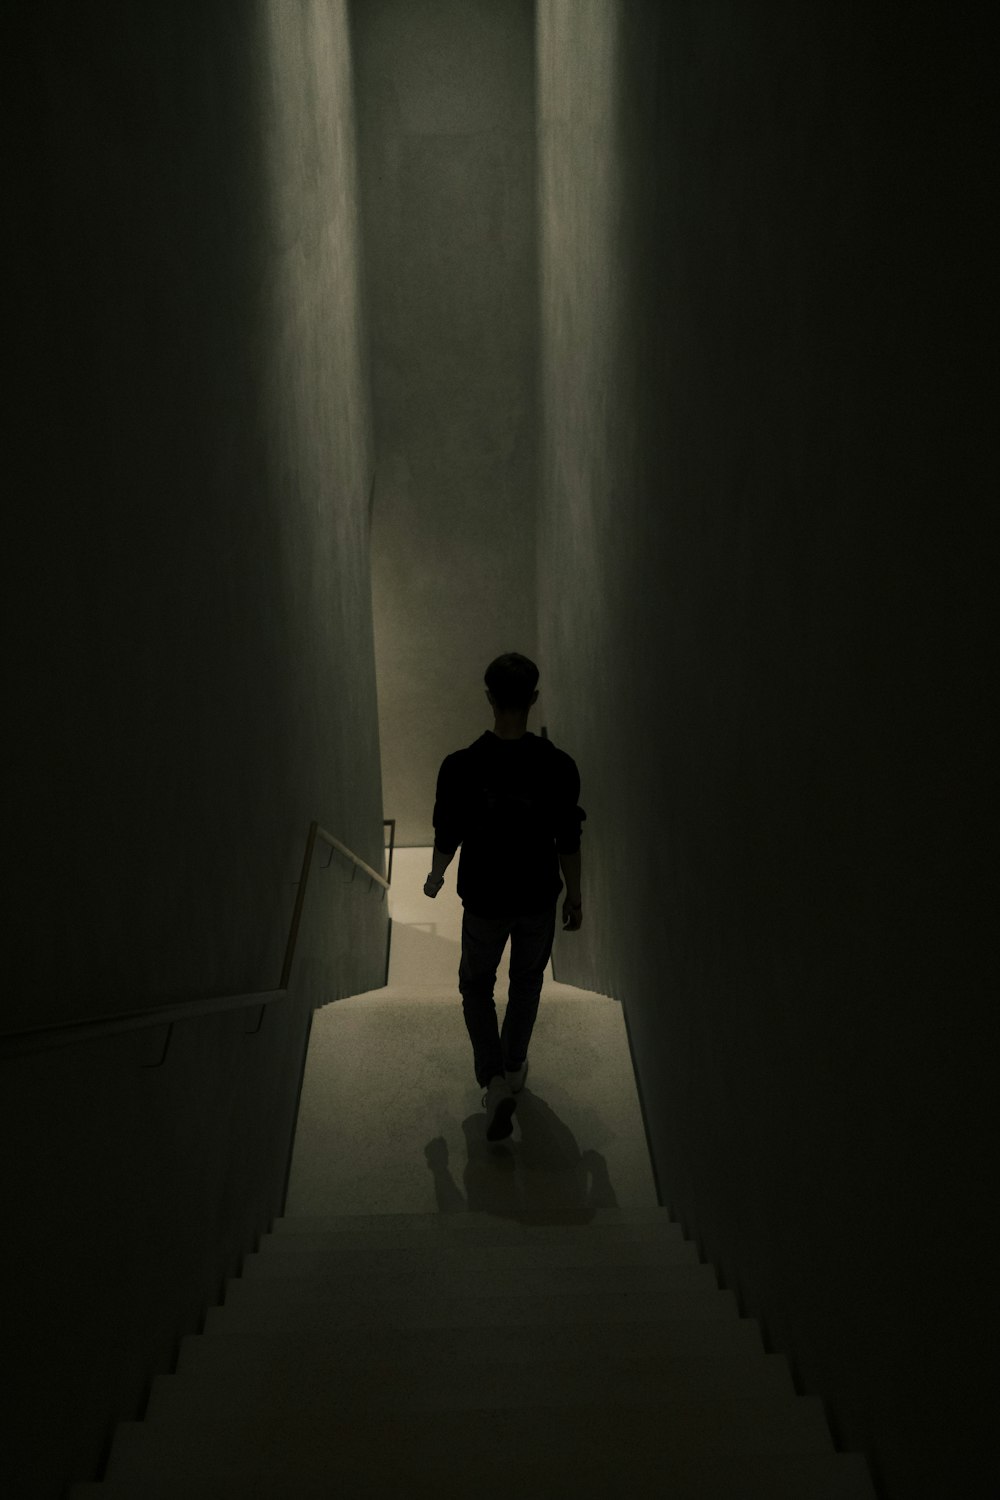 a man walking down a dark hallway